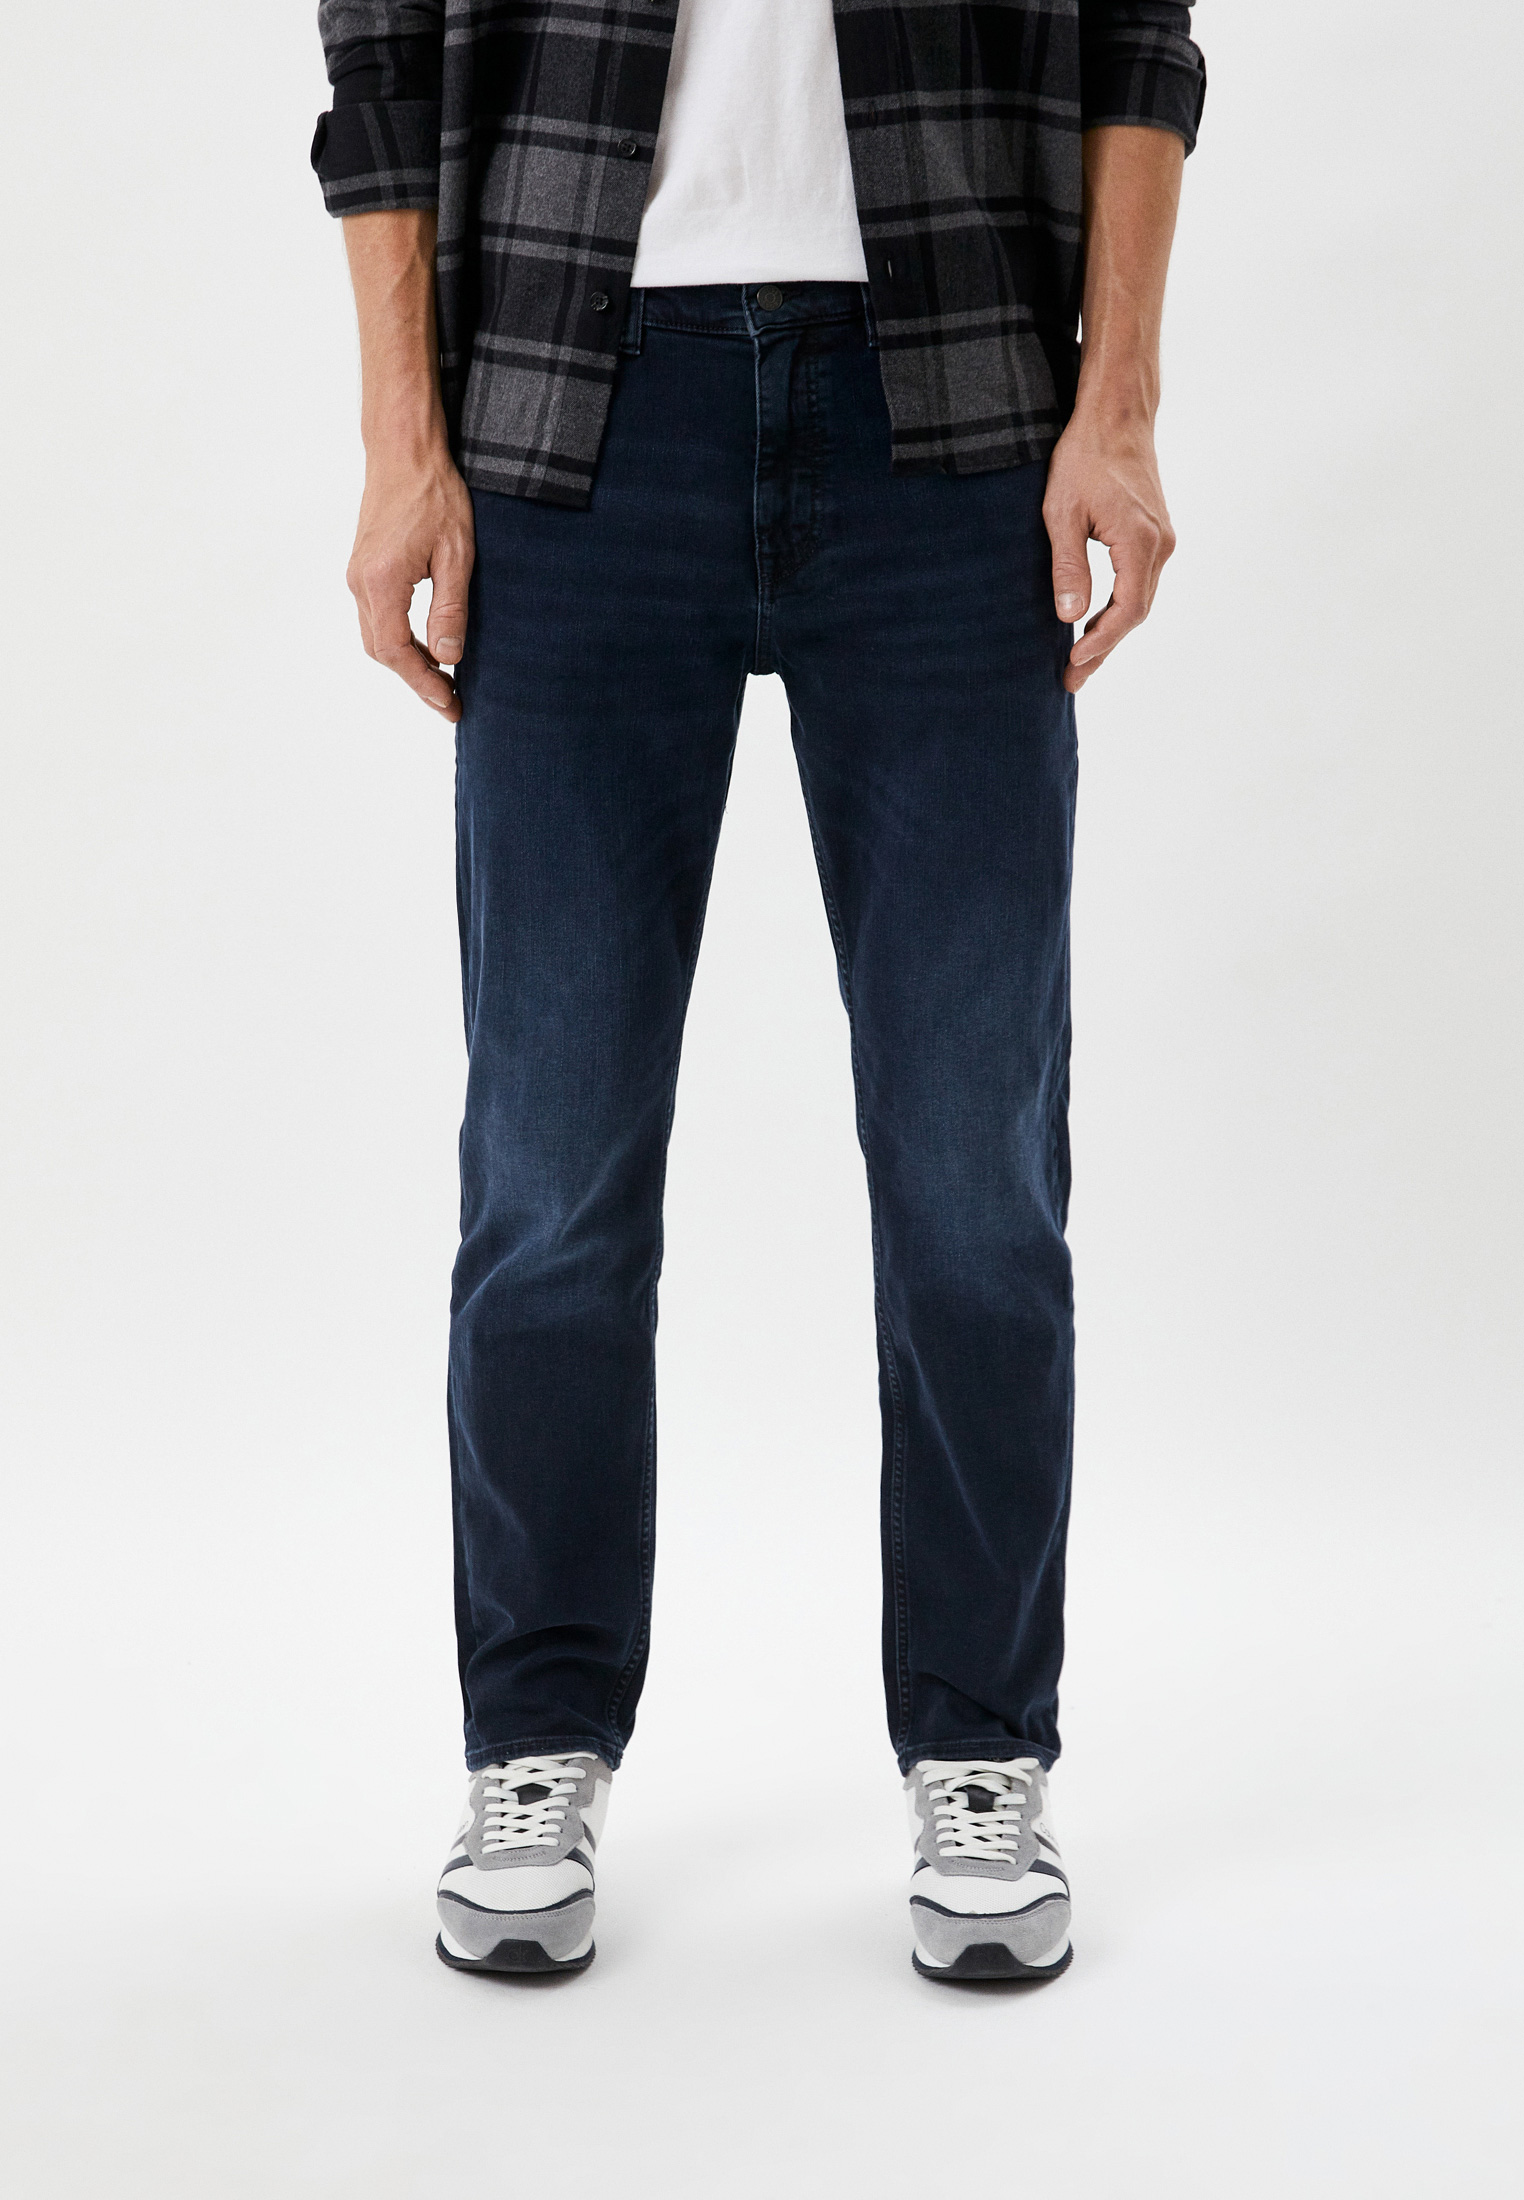 Мужские прямые джинсы Boss (Босс) 50480204: изображение 1